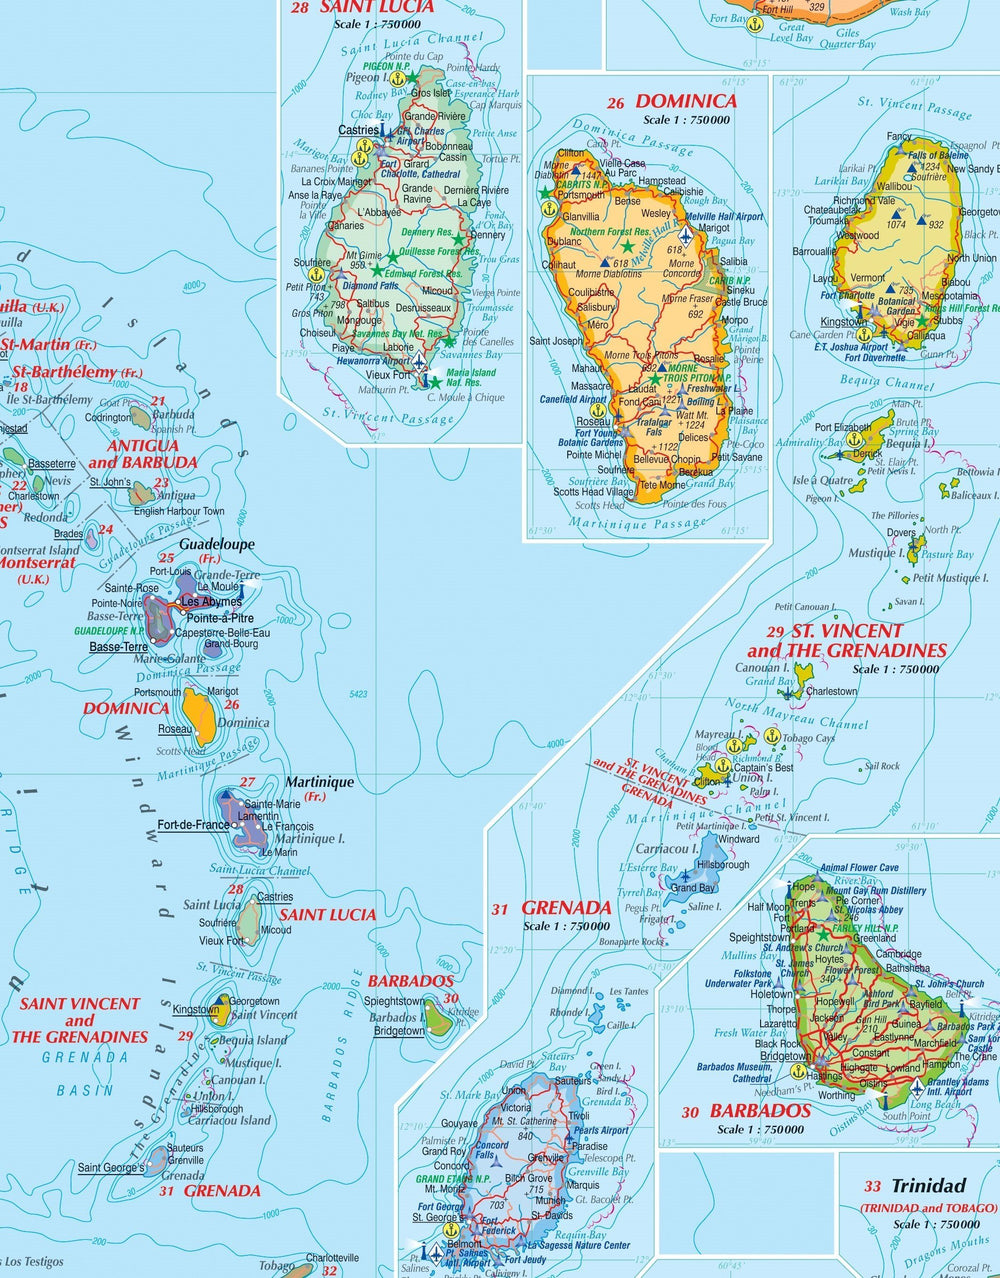 Carte routière - Caraïbes (incluant l'Amérique Centrale, Iles Vierges & Bahamas) | Kasprowski carte pliée Kasprowski 